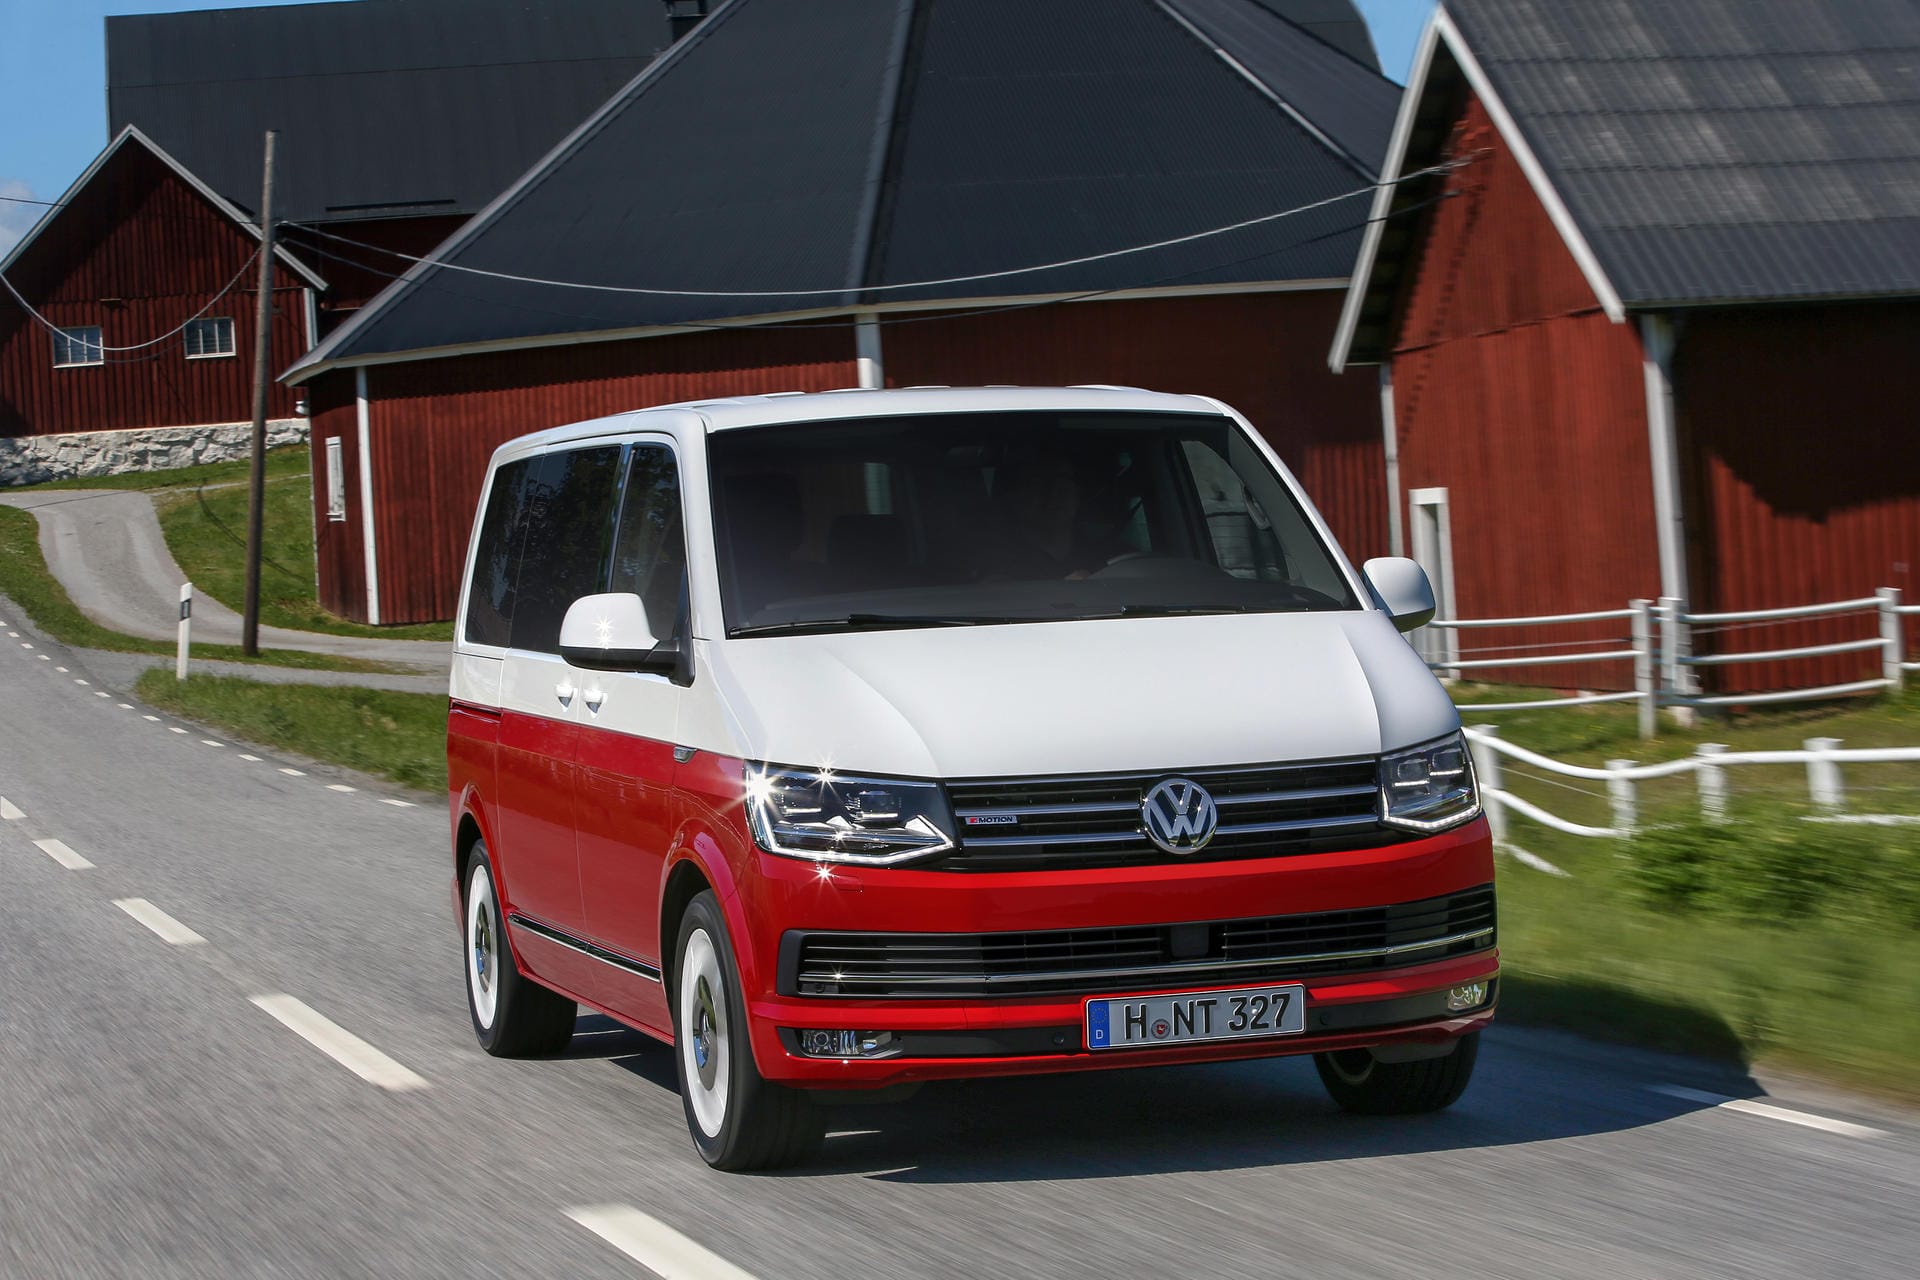 Happiger Preis: Fat 51.000 Euro verlangt VW für das Sondermodell Generation Six.